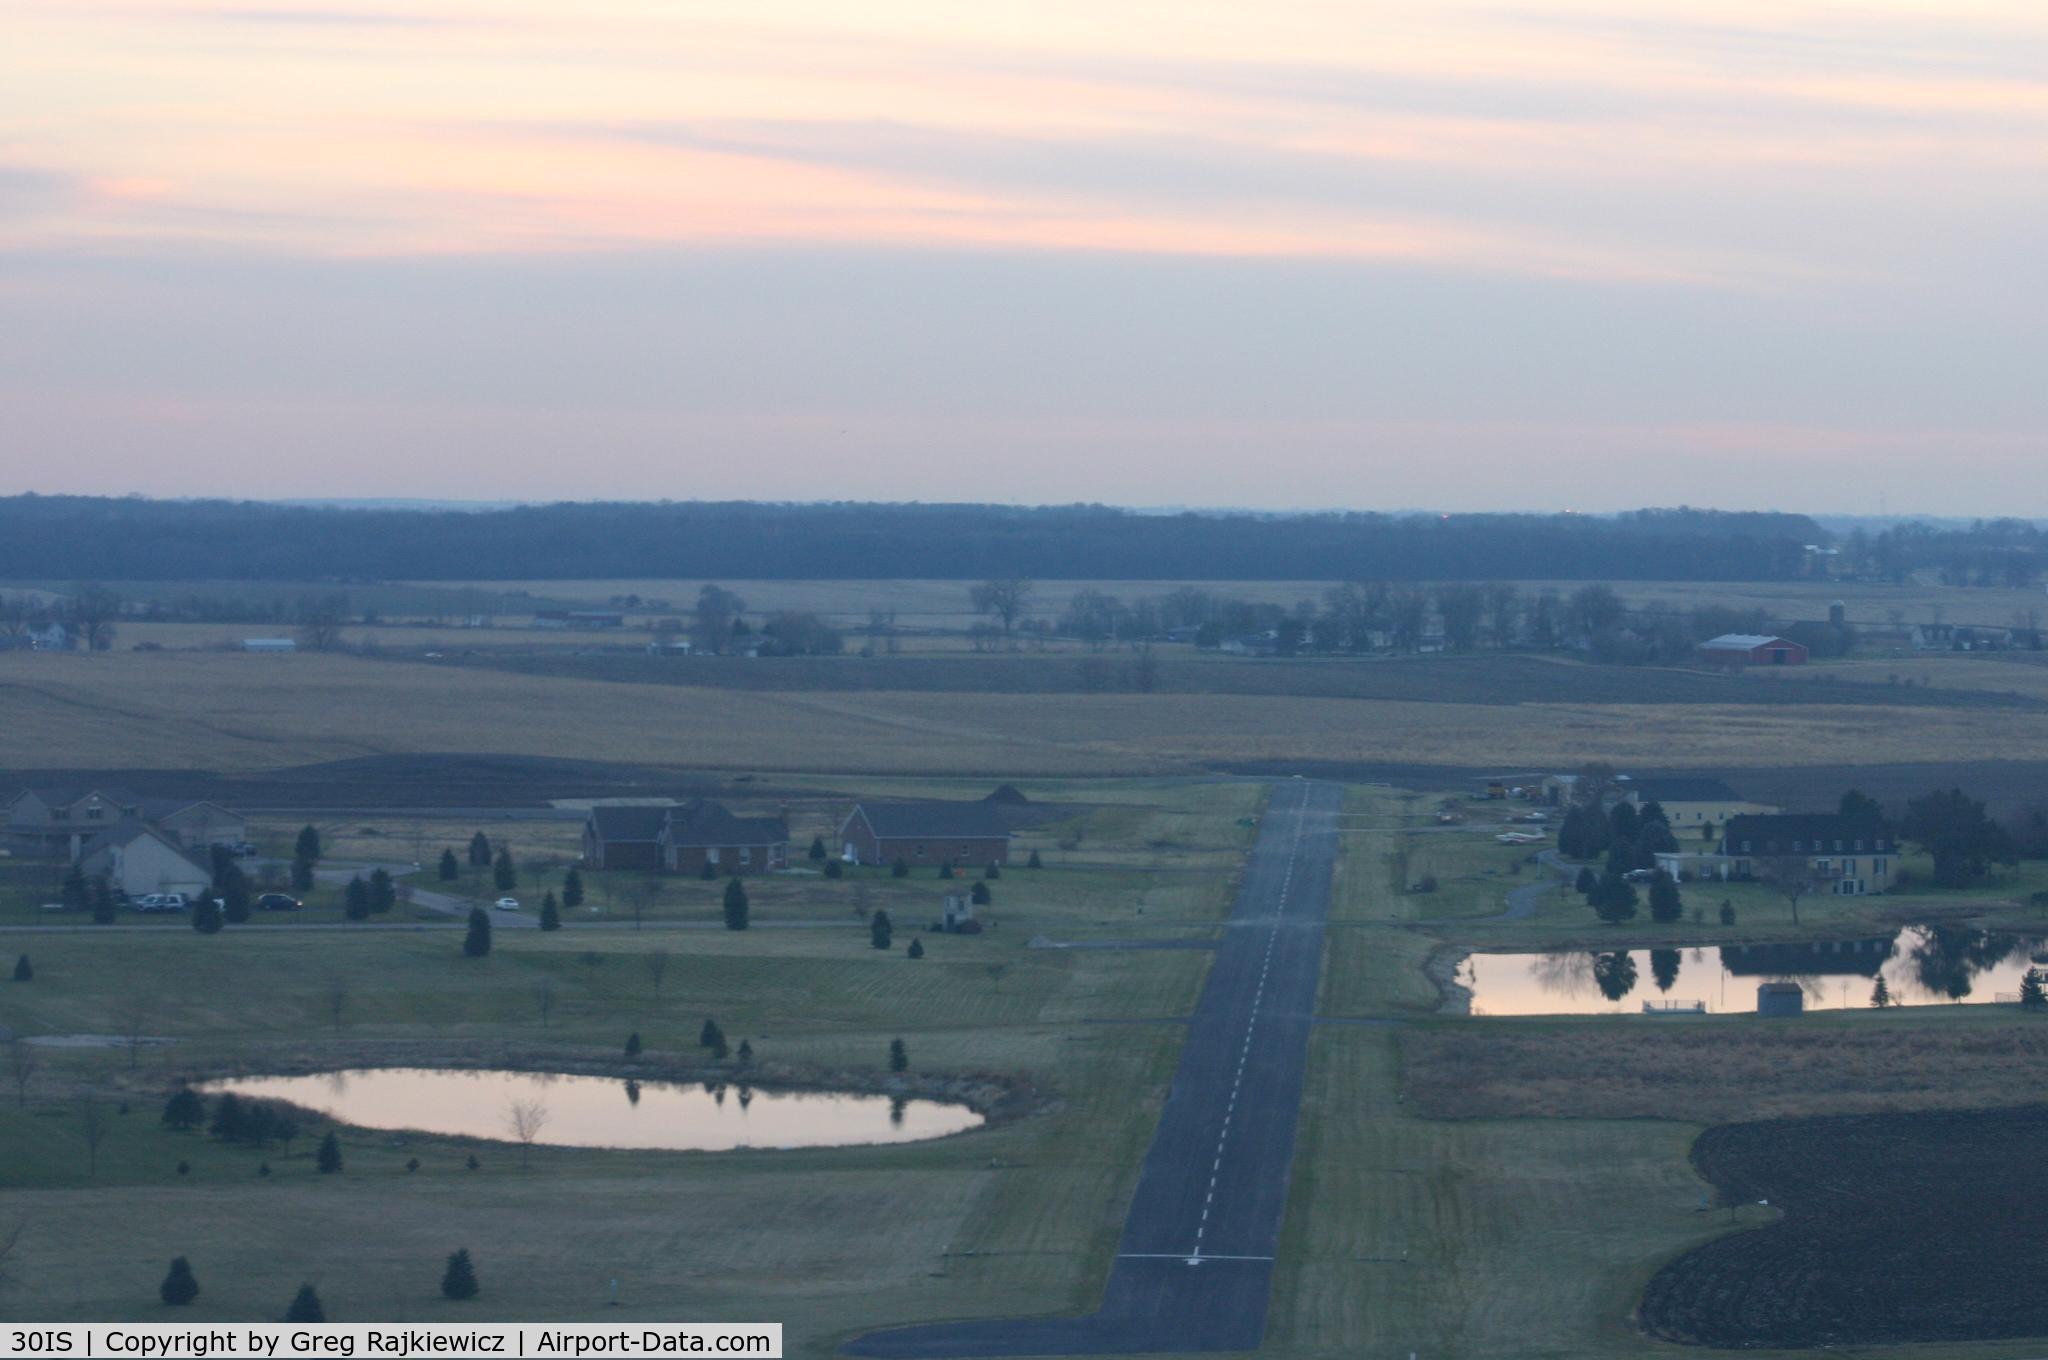 Aero Lake Estates Airport (30IS) - S/W view